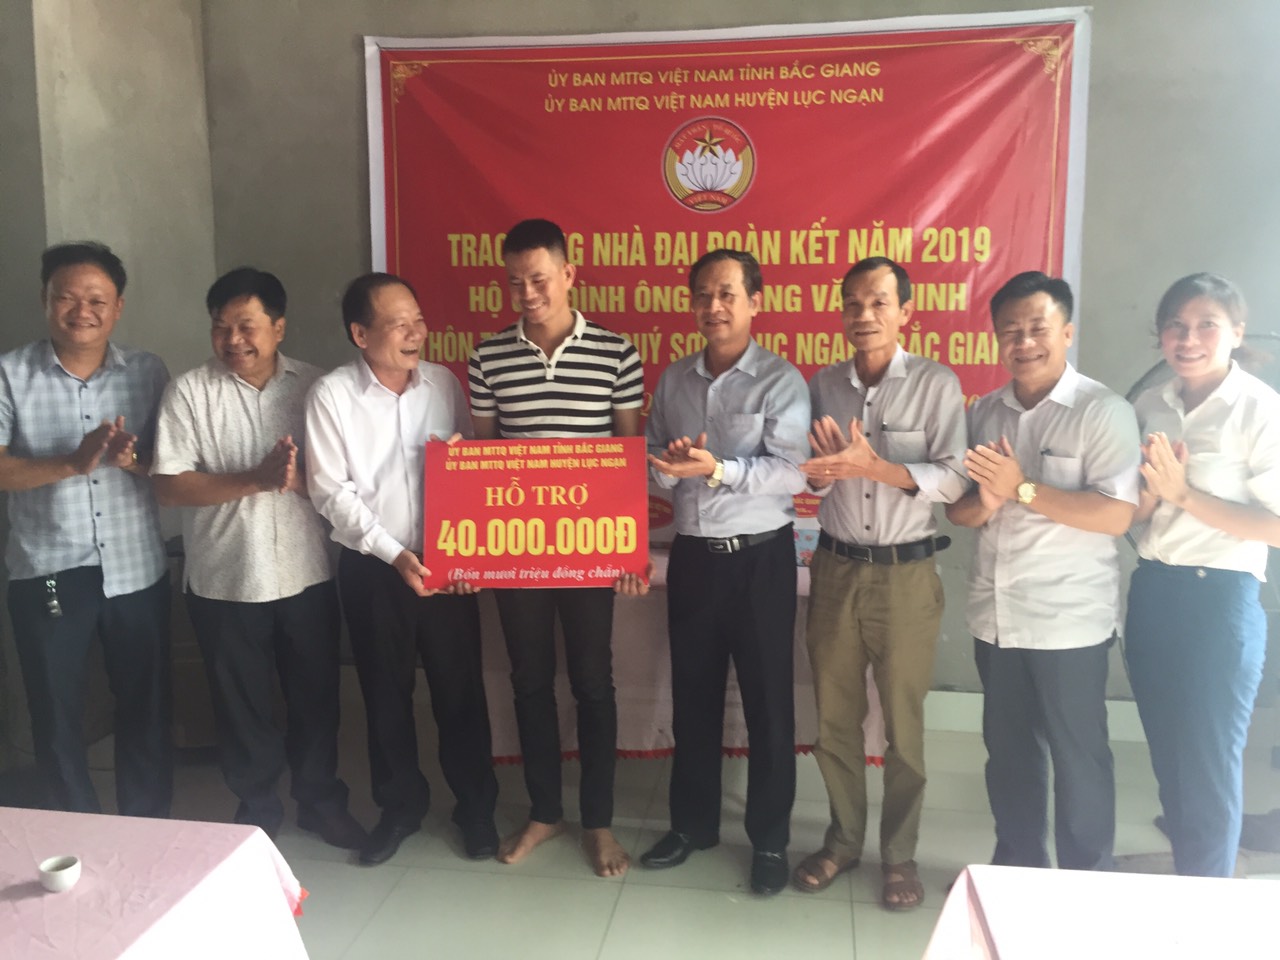 MTTQ tỉnh Bắc Giang trao tặng nhà đại đoàn kết trên địa bàn huyện Lục Ngạn